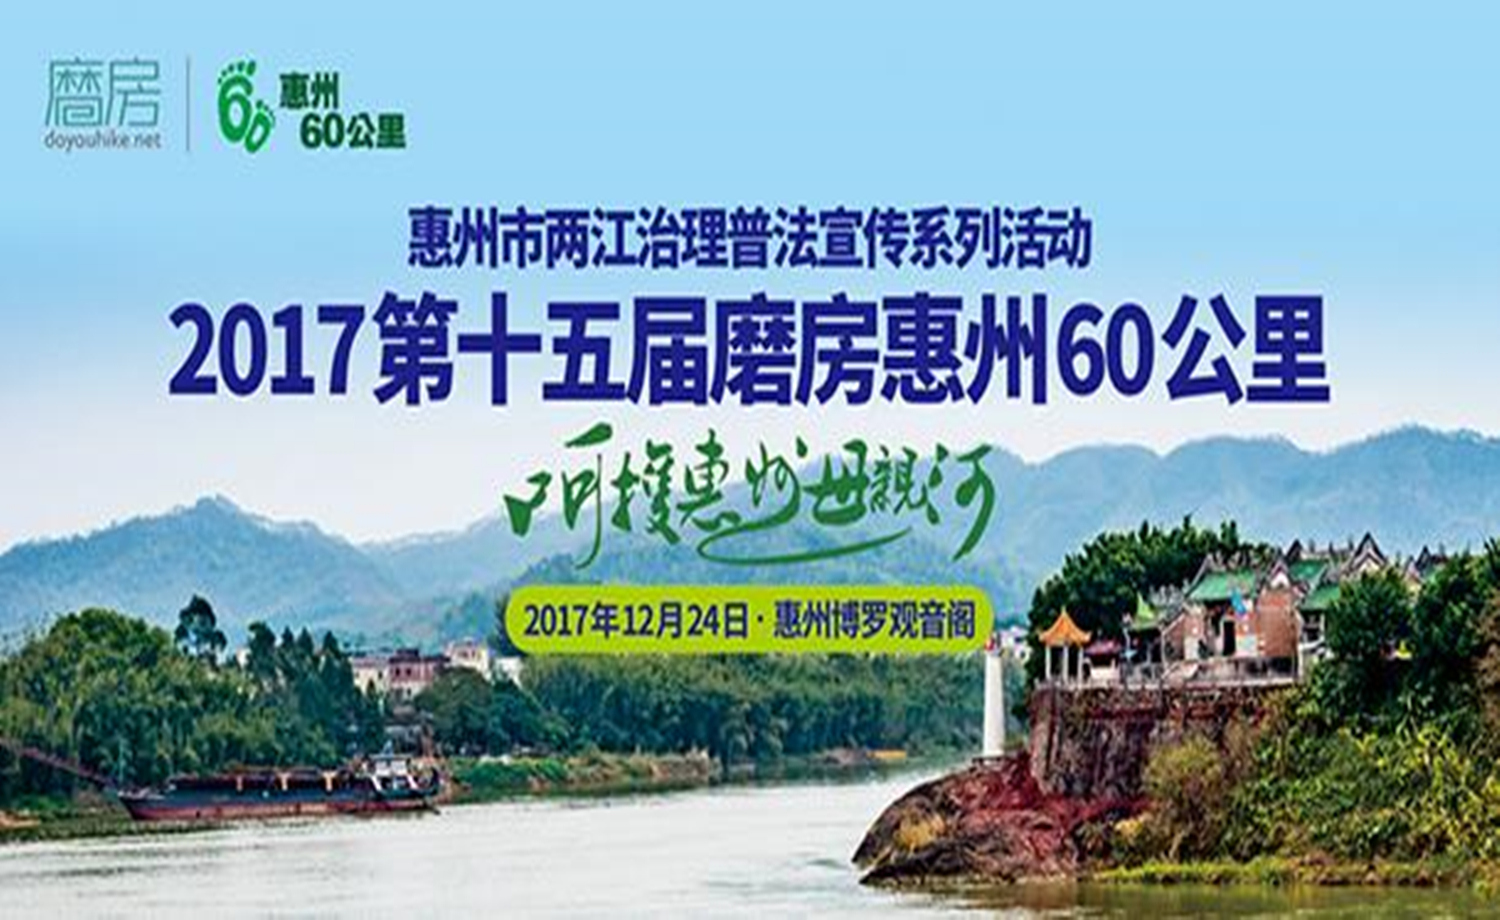 2017第十五届磨房惠州60公里徒步